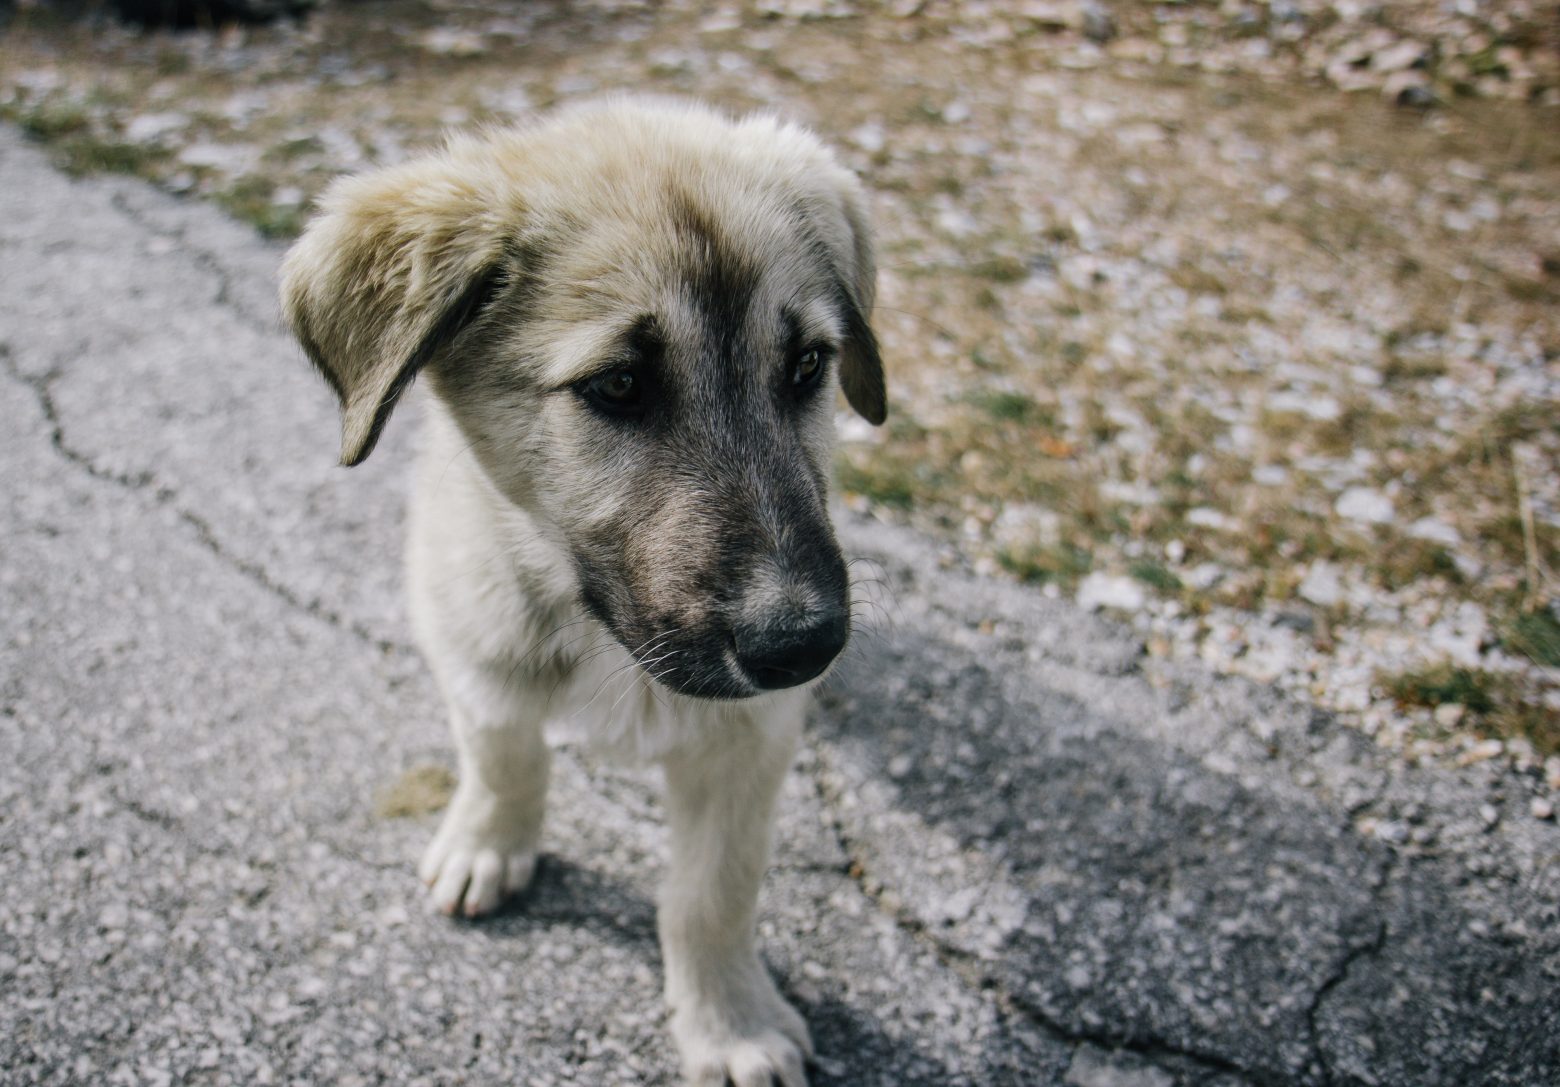 Συγκινητικό: Εδώ και δέκα χρόνια φροντίζει εγκαταλελειμμένους σκύλους - Το «πριν» και το «μετά» είναι απίστευτο